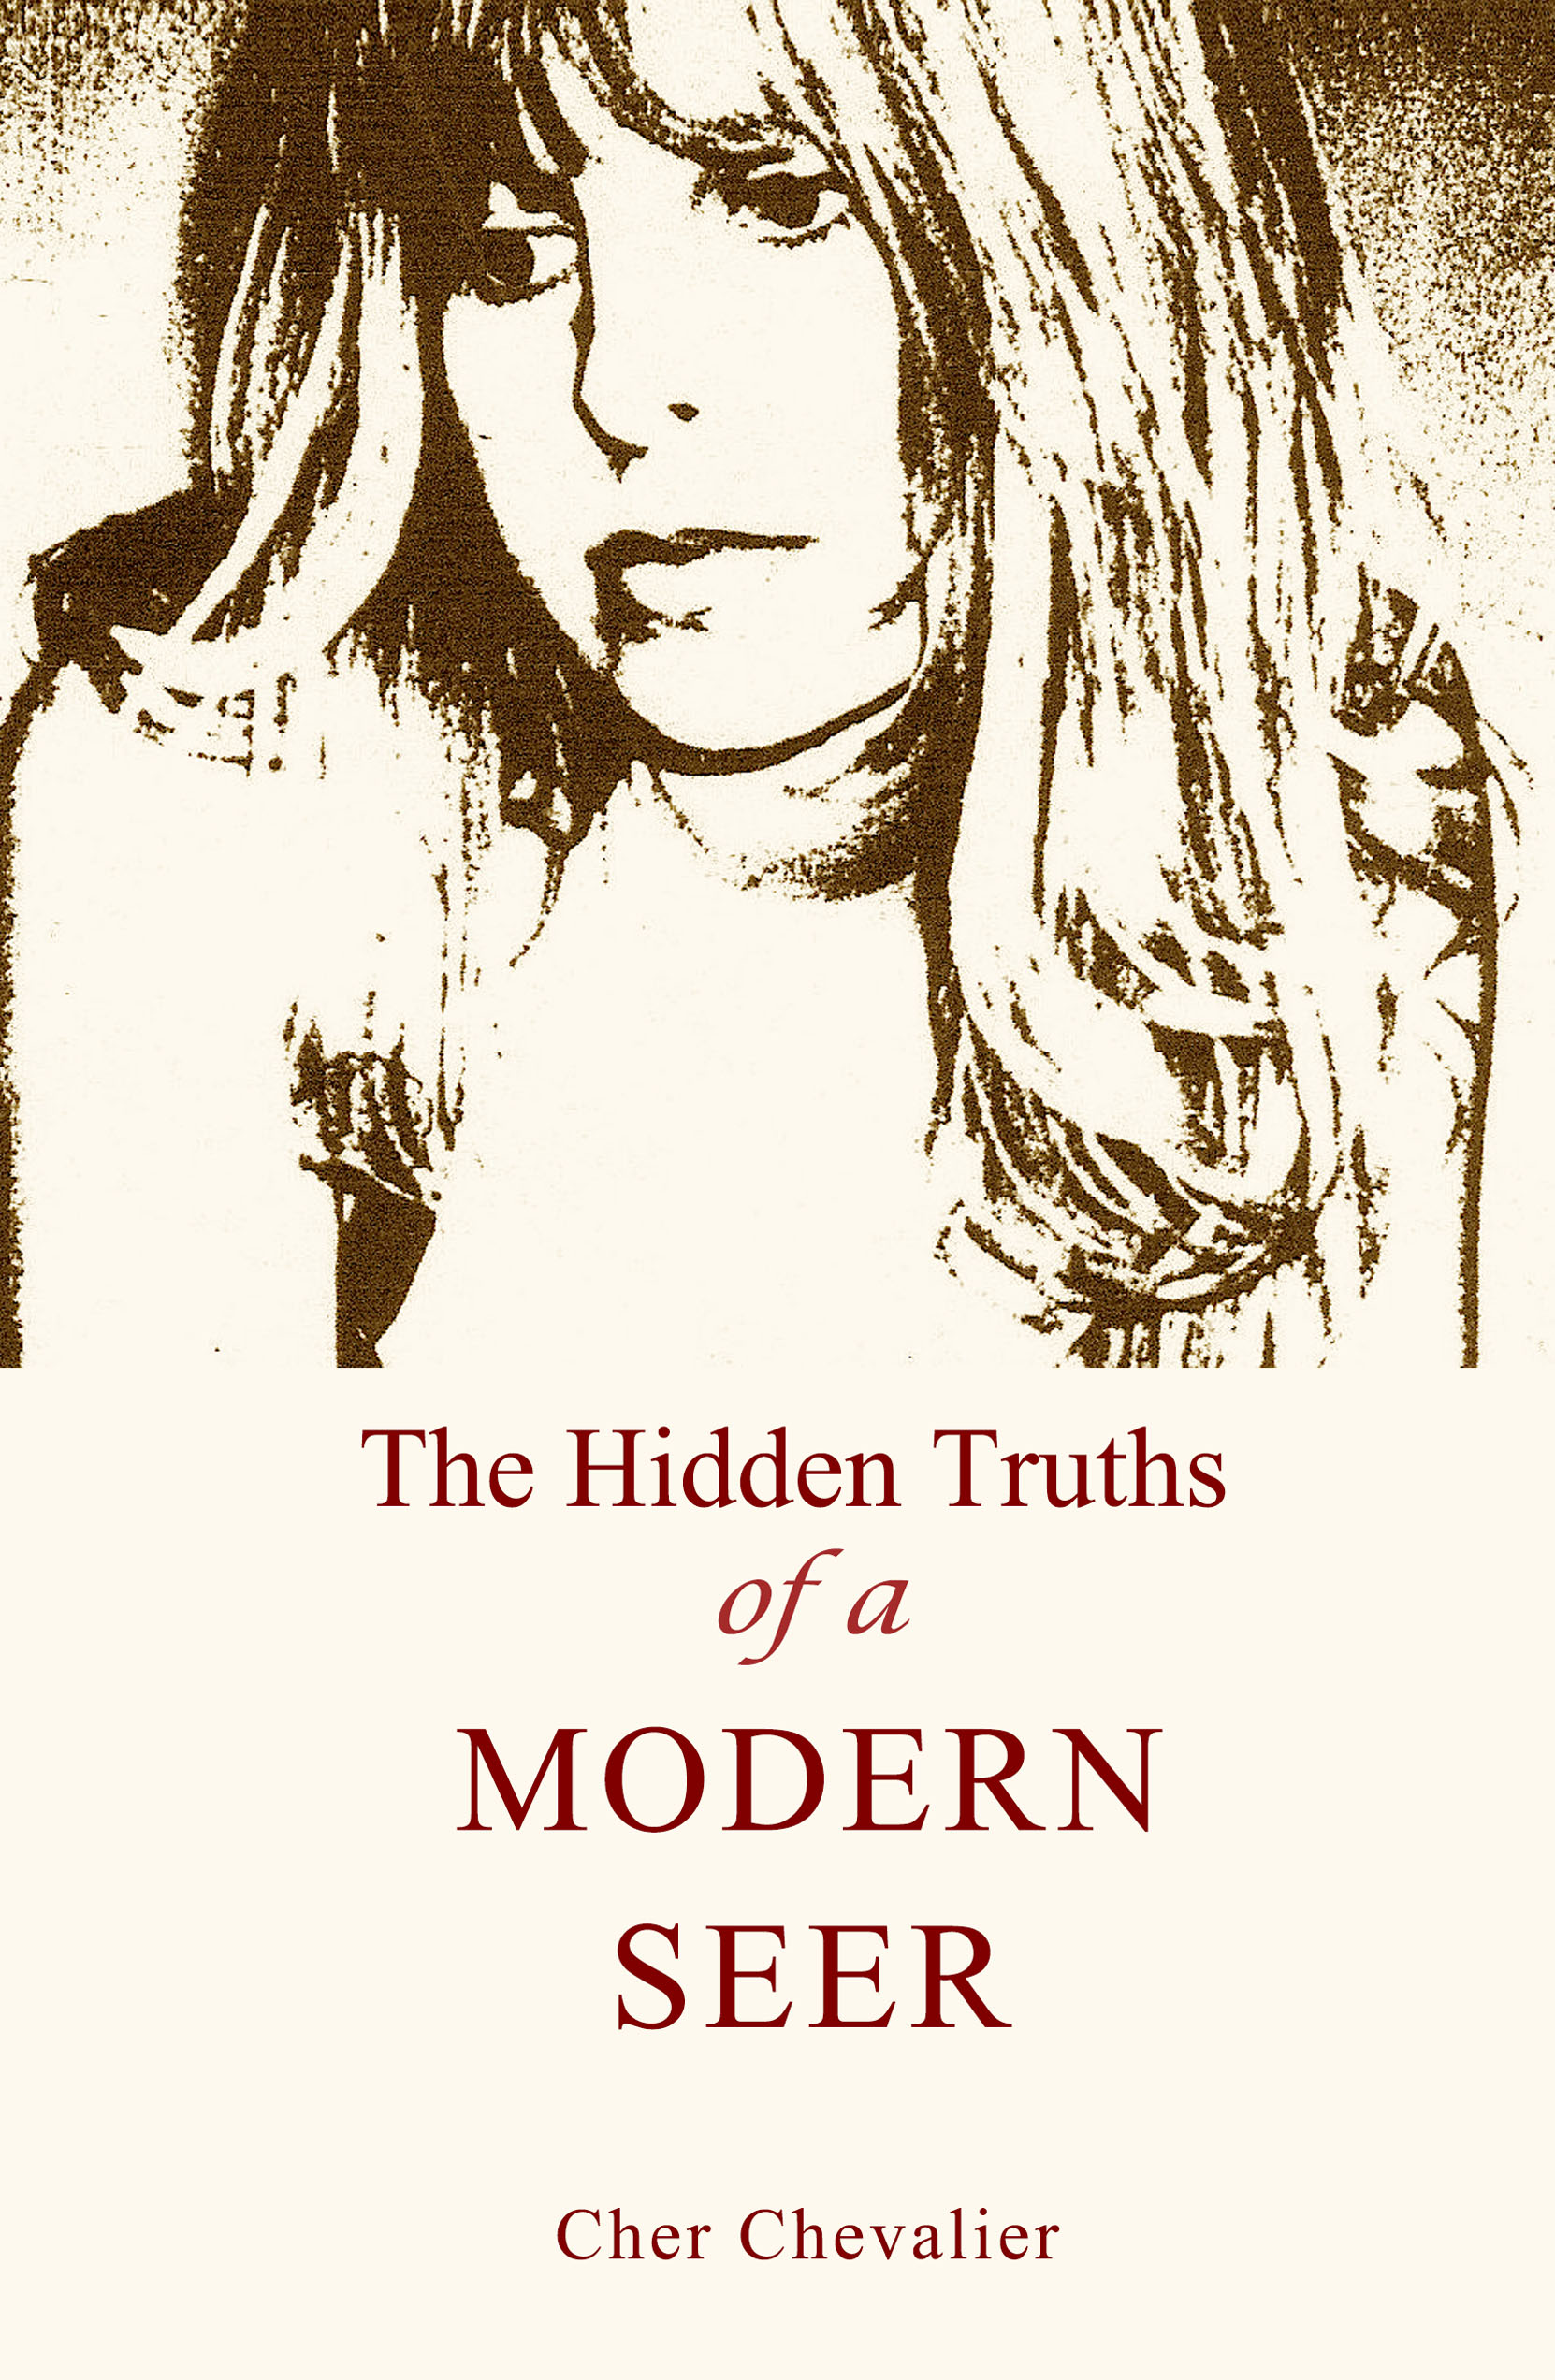 The Hidden Truths of a Modern Seer